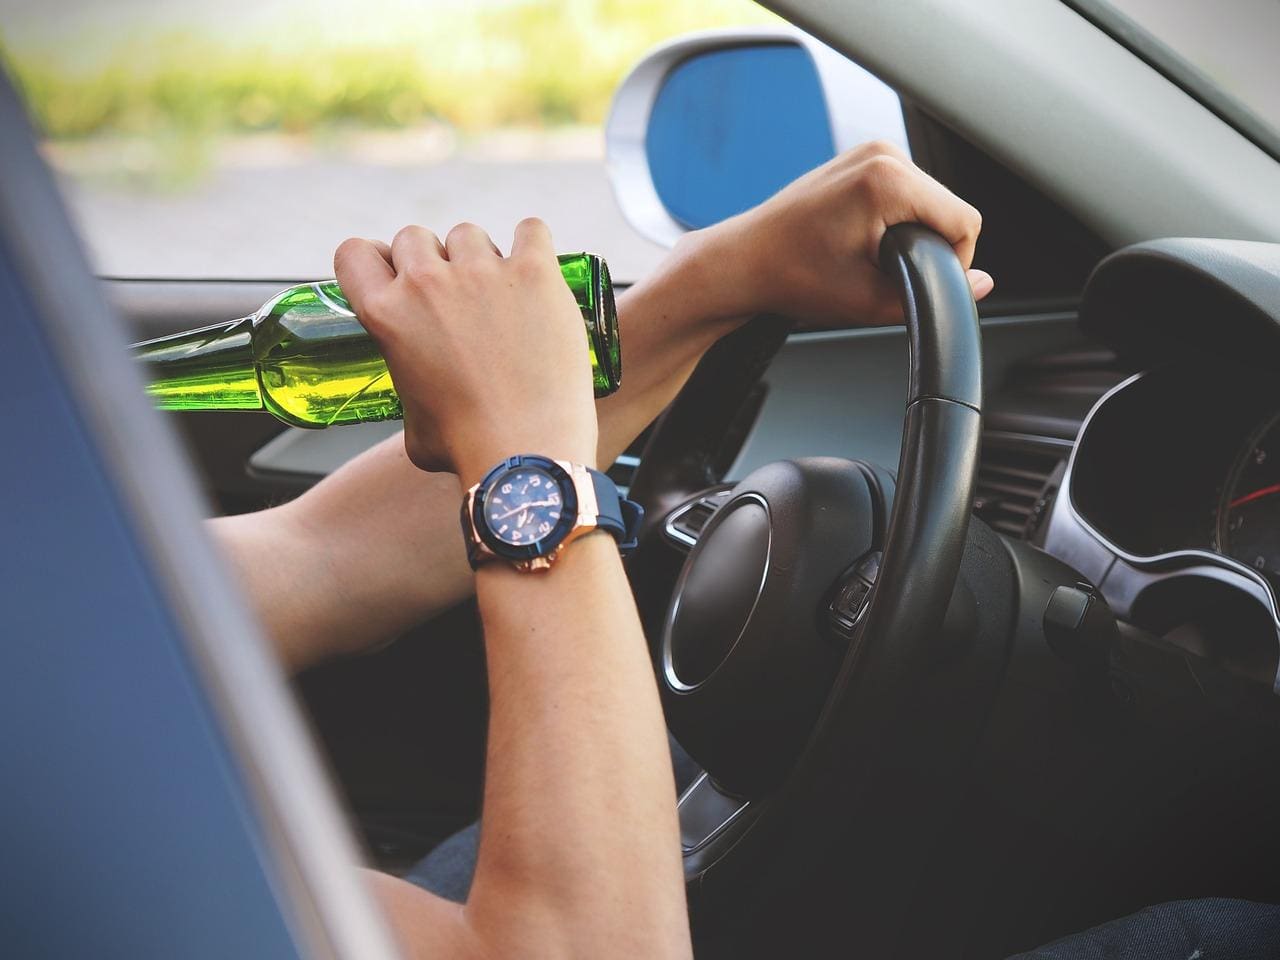 Dirigir sob efeito de álcool pode ser enquadrado como crime de trânsito e resultar em prisão 